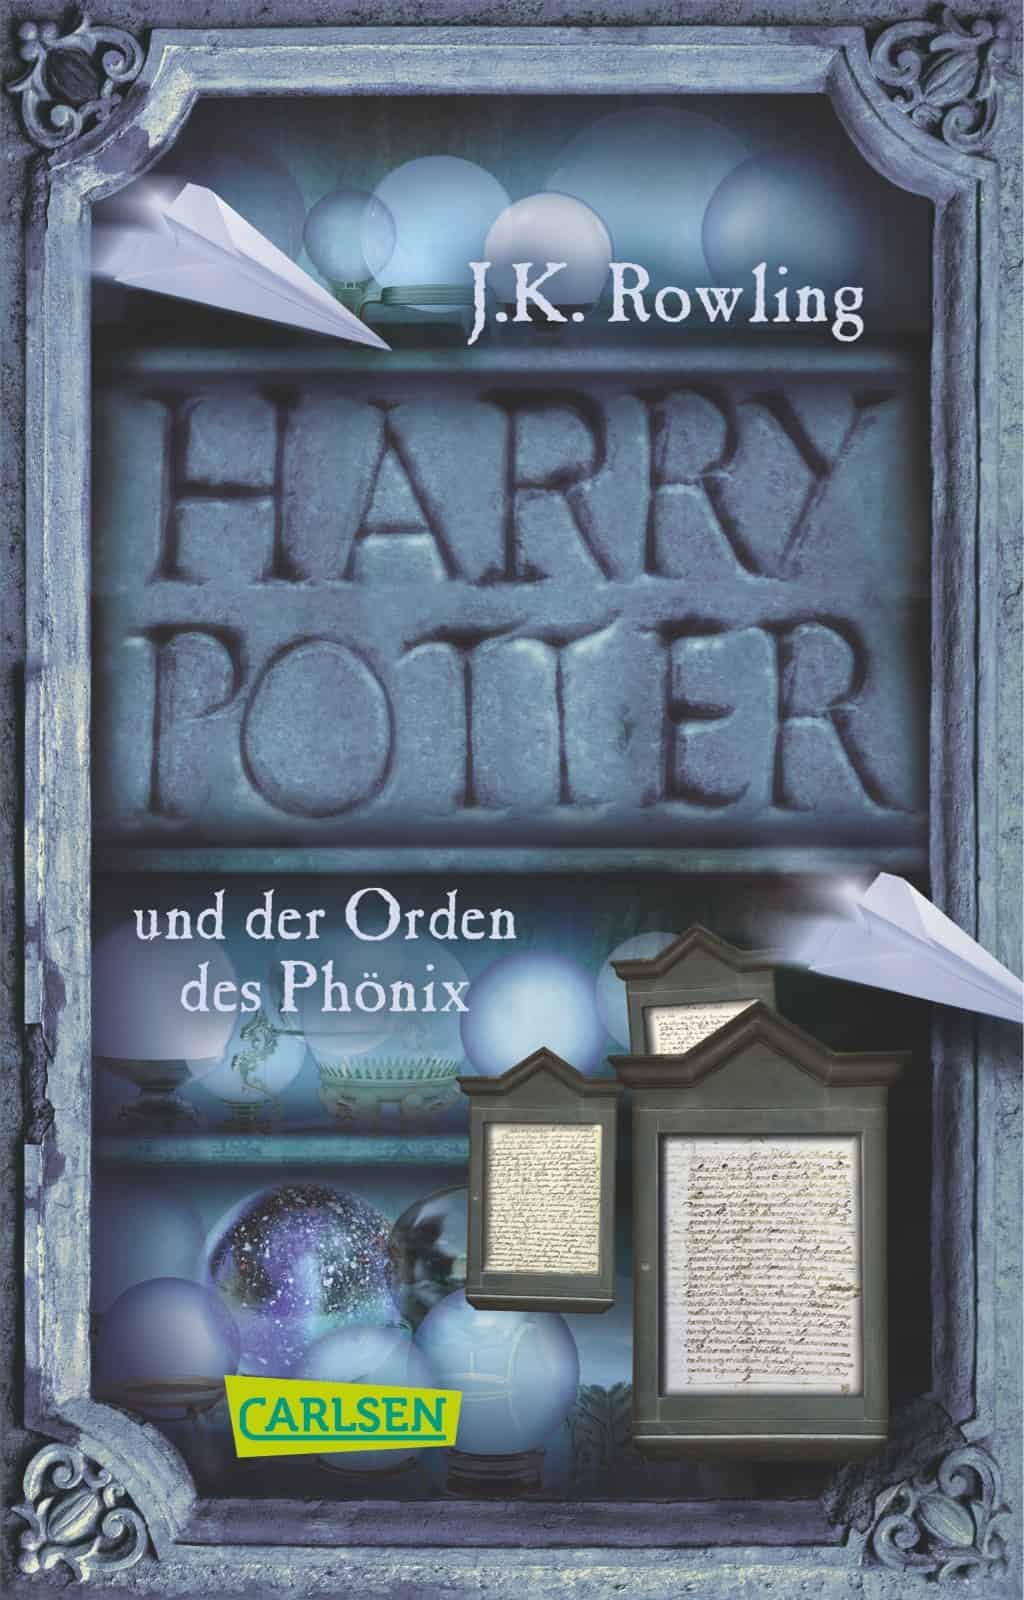 Rowling, Joanne K.: Harry Potter und der Orden des Phönix